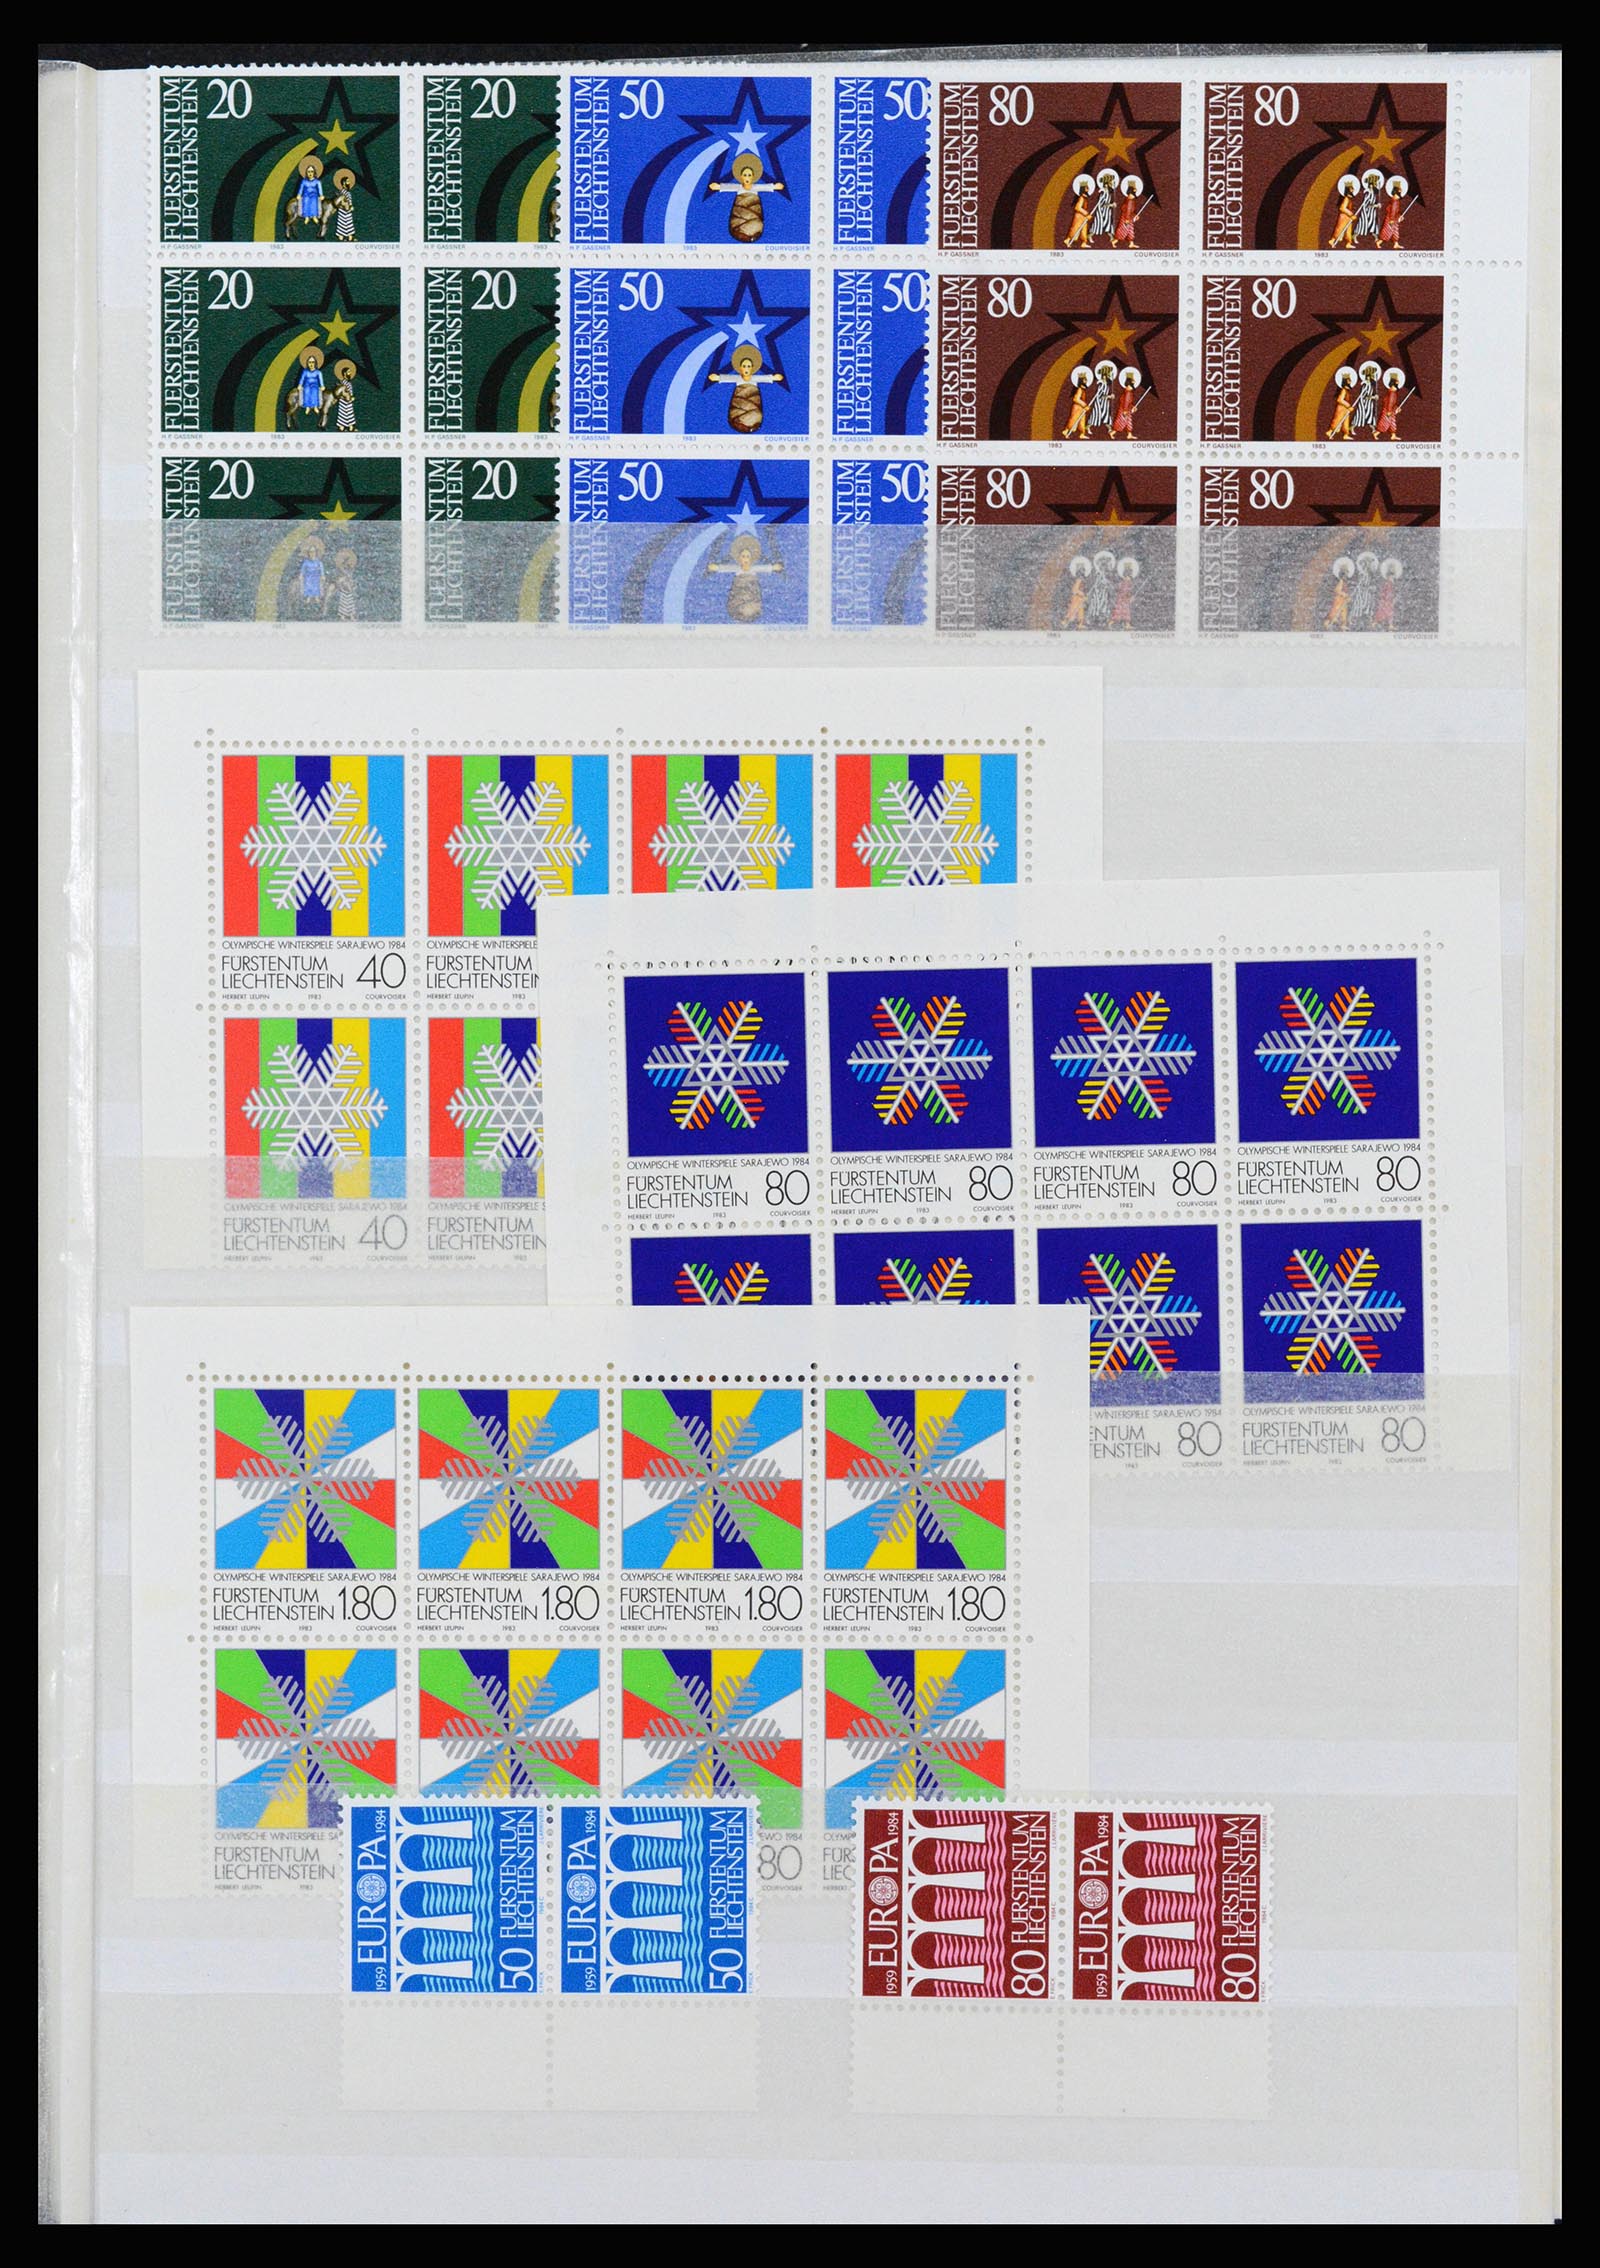 37261 075 - Stamp collection 37261 Liechtenstein 1961-1995.